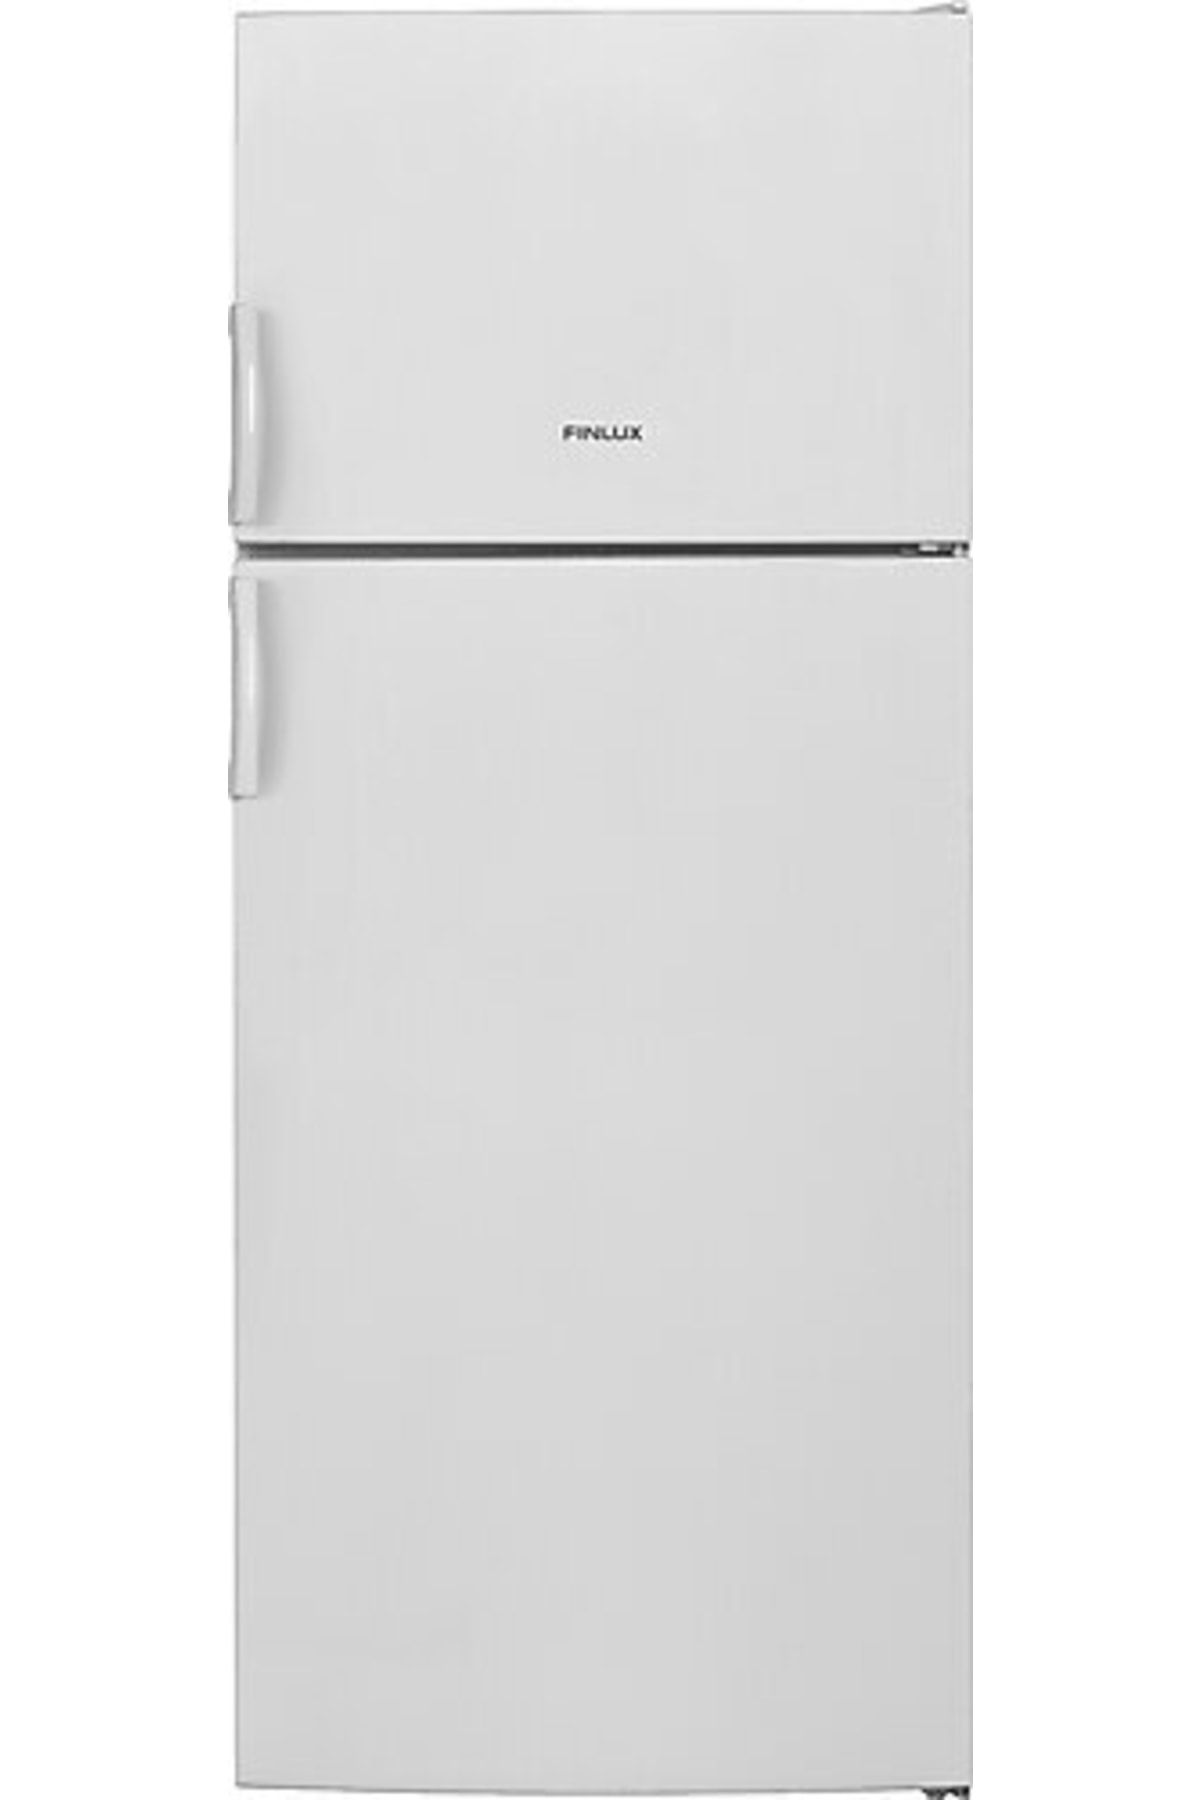 Finlux 6020 Nf Buzdolabı